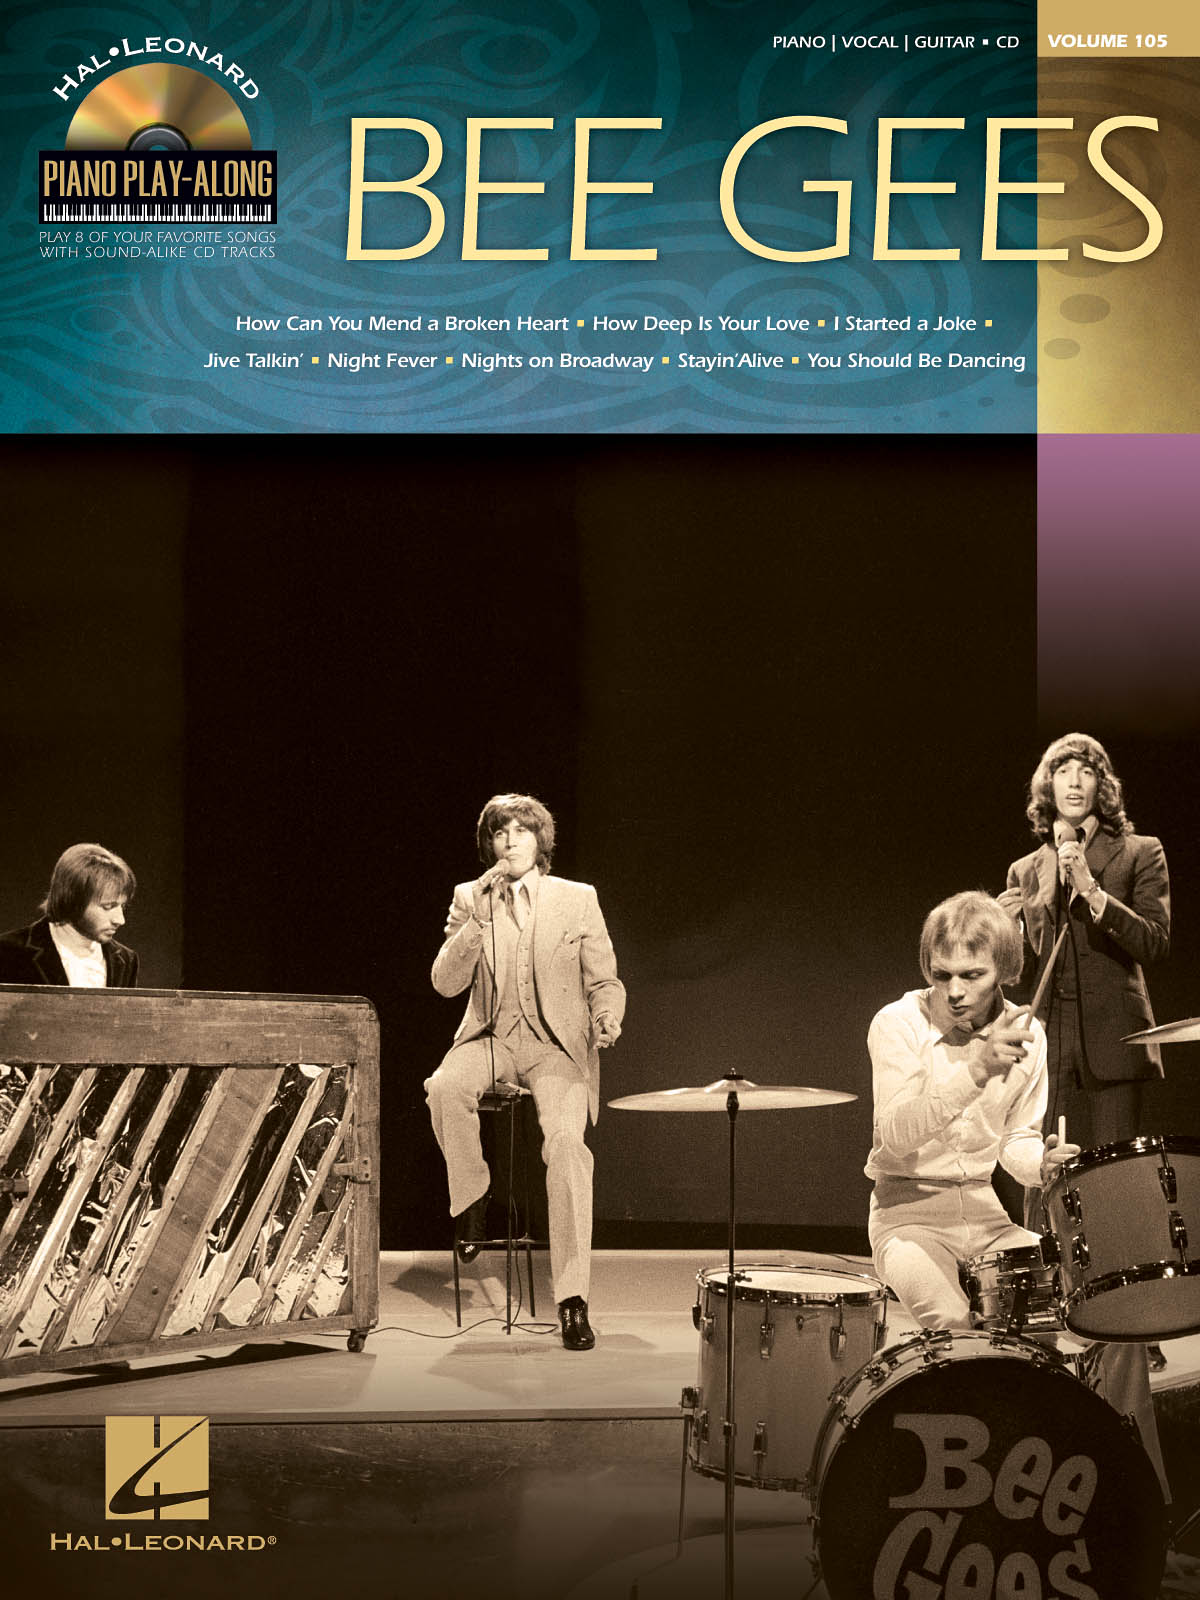 Bee Gees - Piano Play-Along Volume 105 známé písně pro klavír